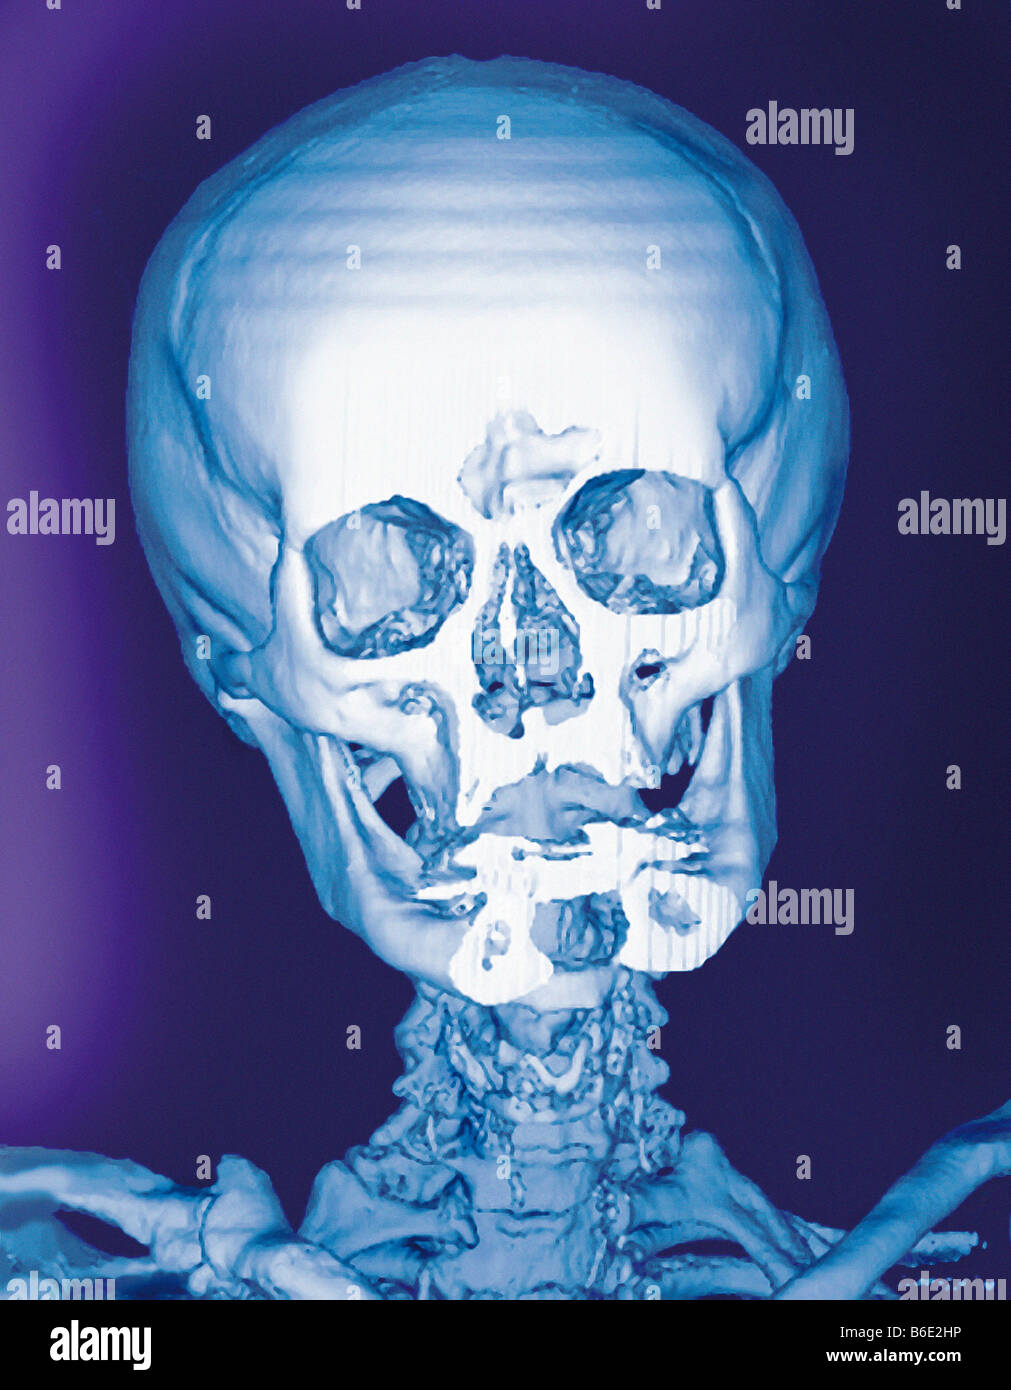 Cranio normale, frontale colorata 3D tomografia computerizzata (CT) scansione. Foto Stock